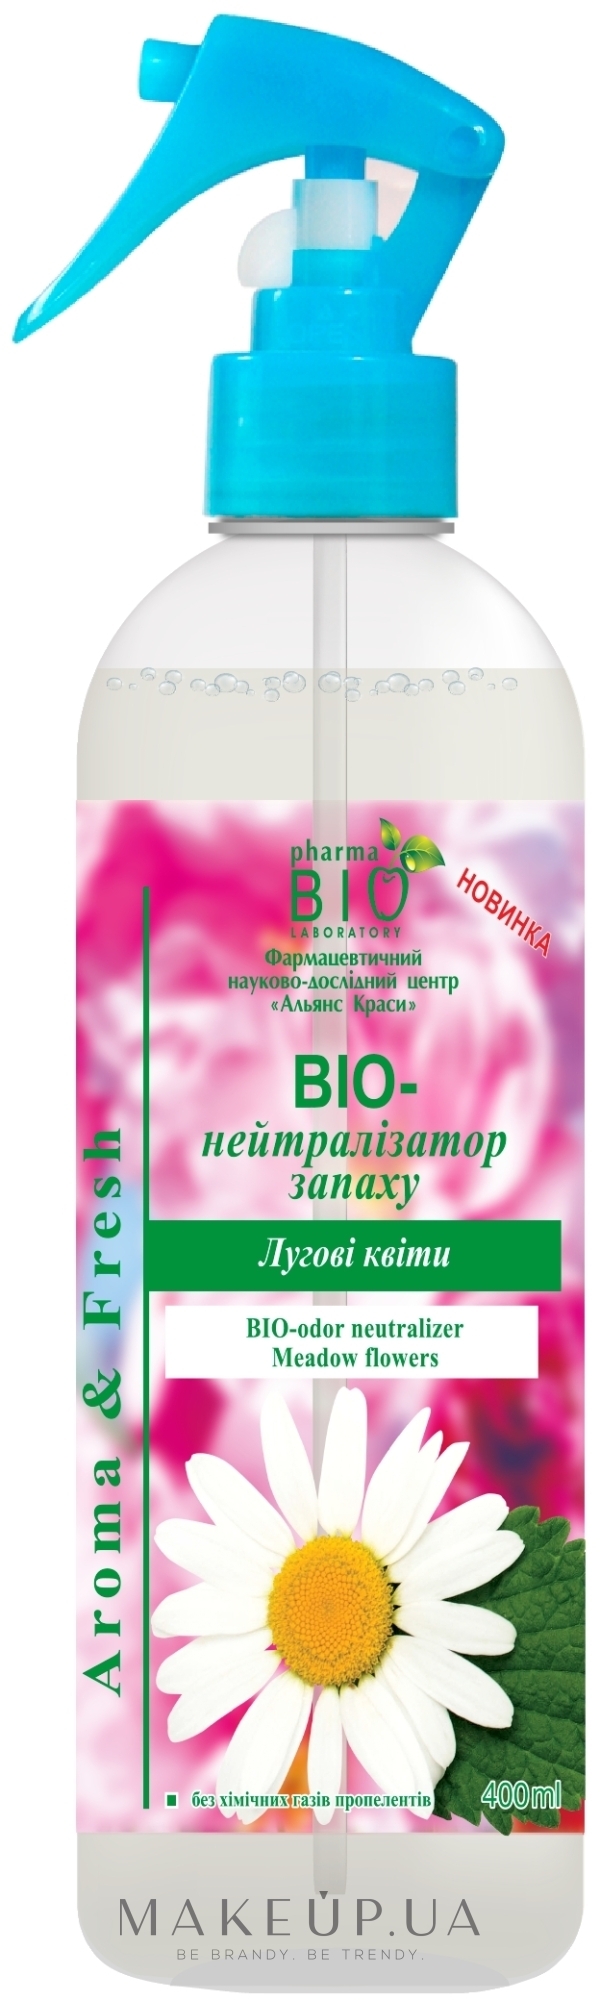 Освіжувач повітря "Біонейтралізатор запаху "Лугові квіти" - Pharma Bio Laboratory — фото 400ml